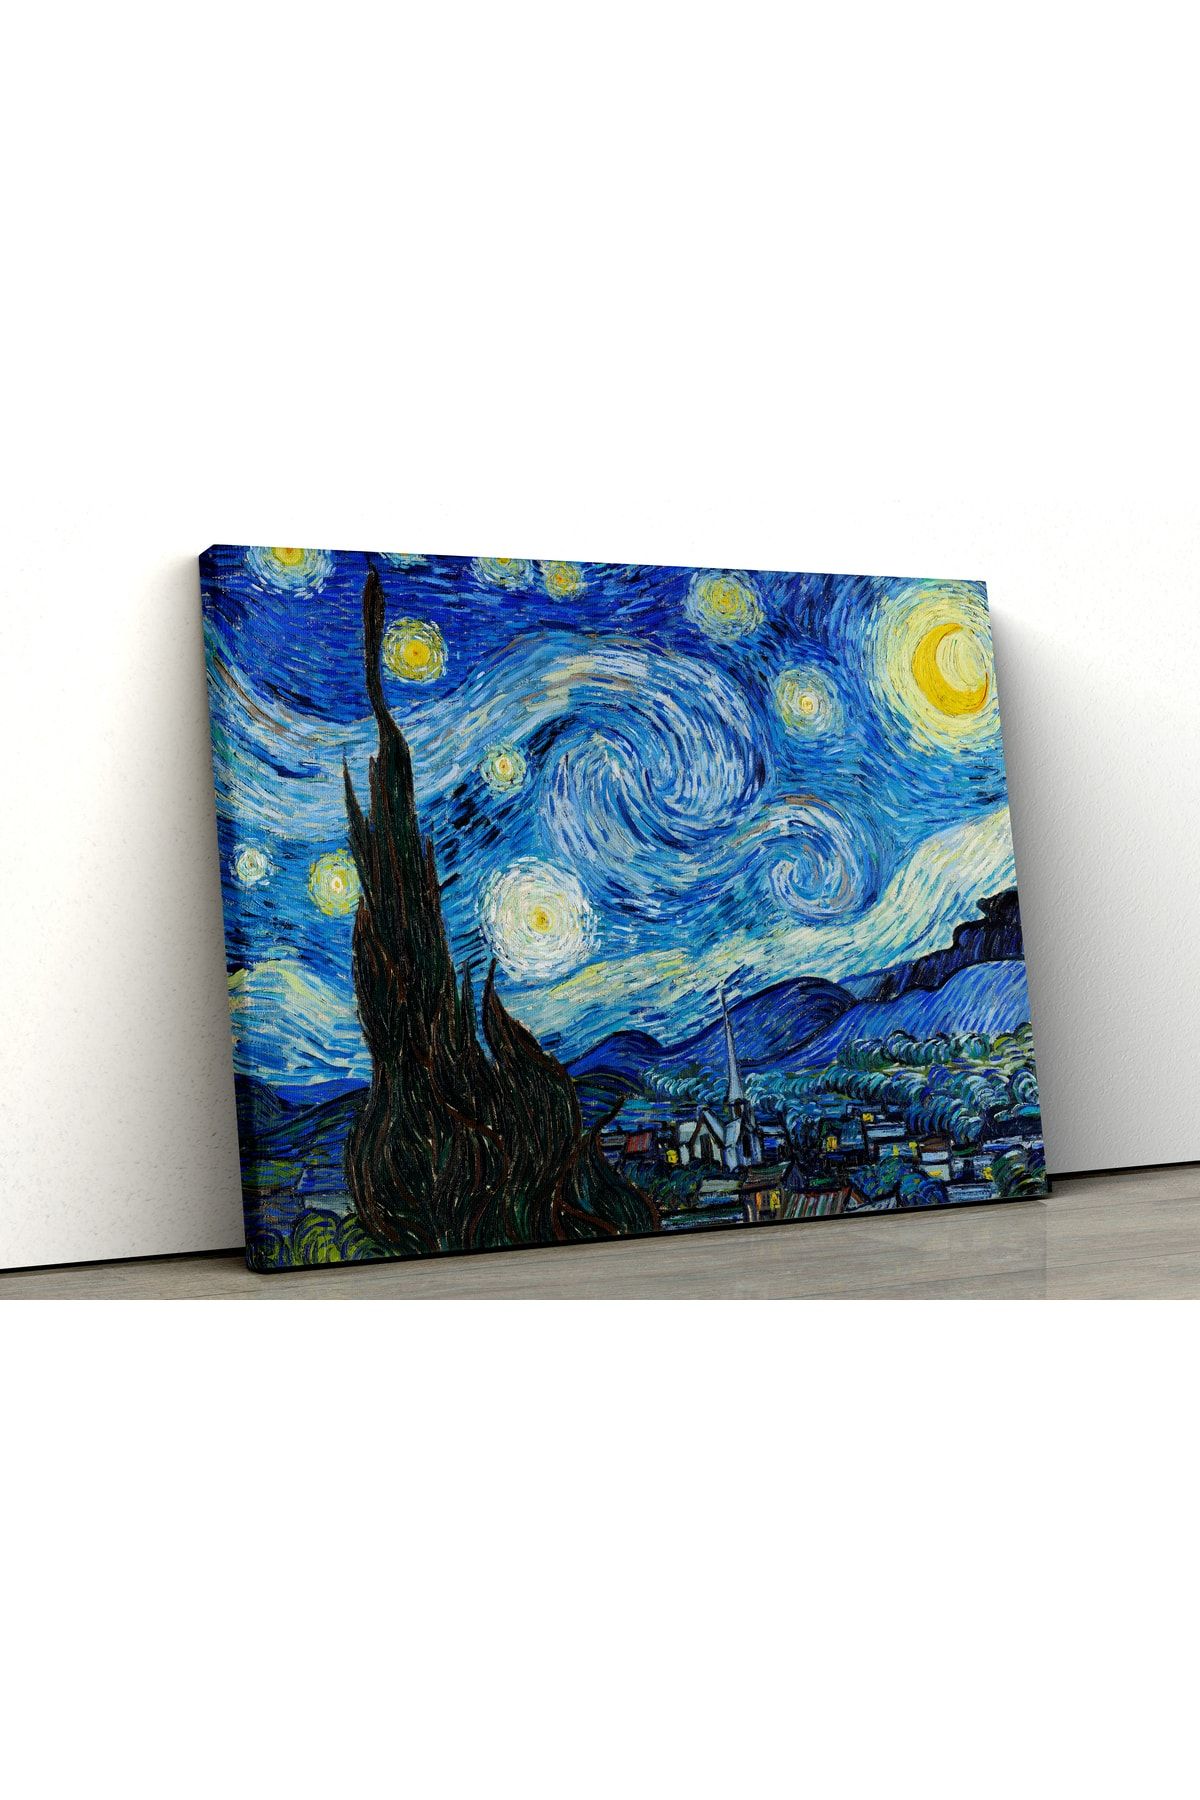 Blok Design Kanvas Tablo Resim Van Gogh Yıldızlı Gece Ünlü Yağlıboya Duvar Tablosu